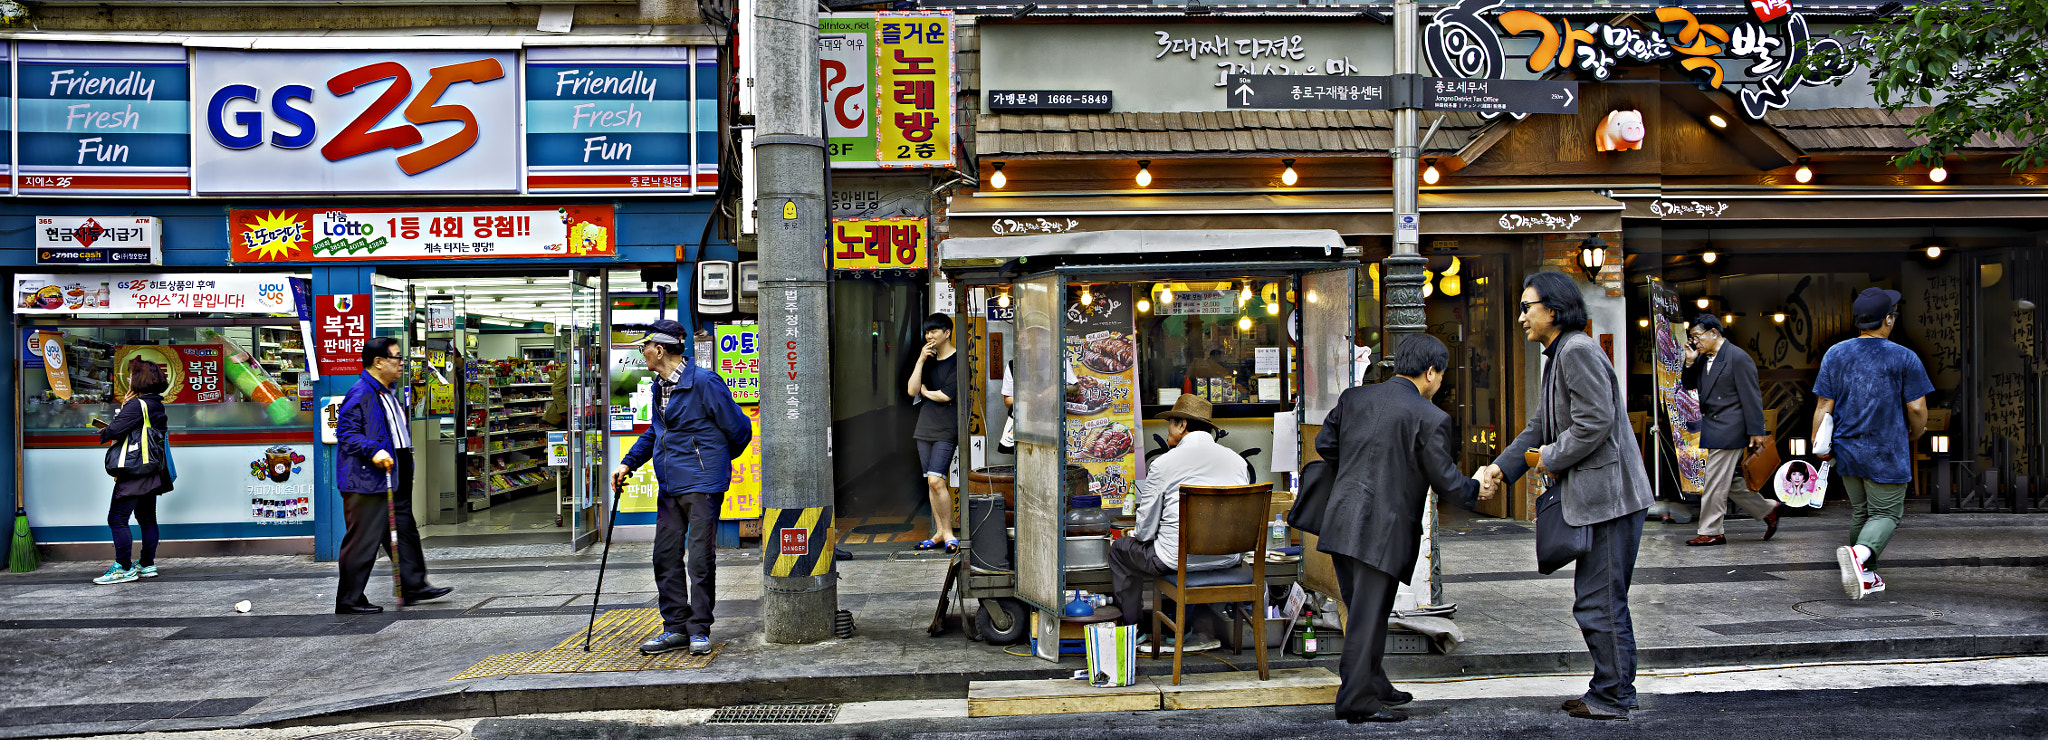 Nikon D4 + Nikon PC-E Nikkor 45mm F2.8D ED Tilt-Shift sample photo. Seoul street scene photography